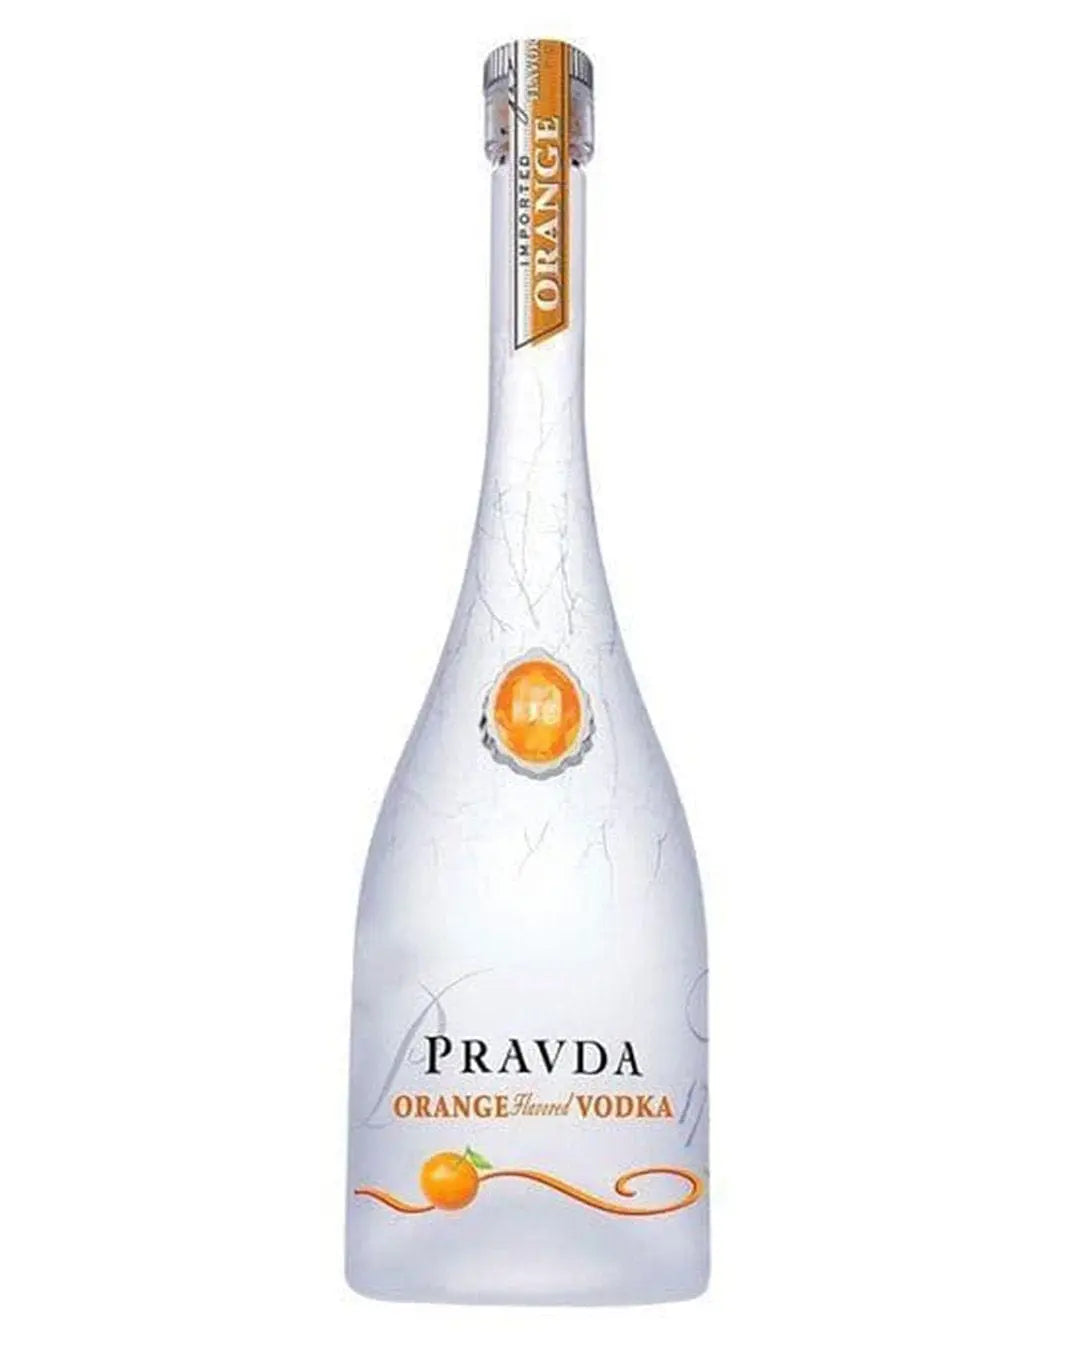 Pravda Ultra Premium Polish Orange Vodka, 70 cl Vodka 59018 11521 041